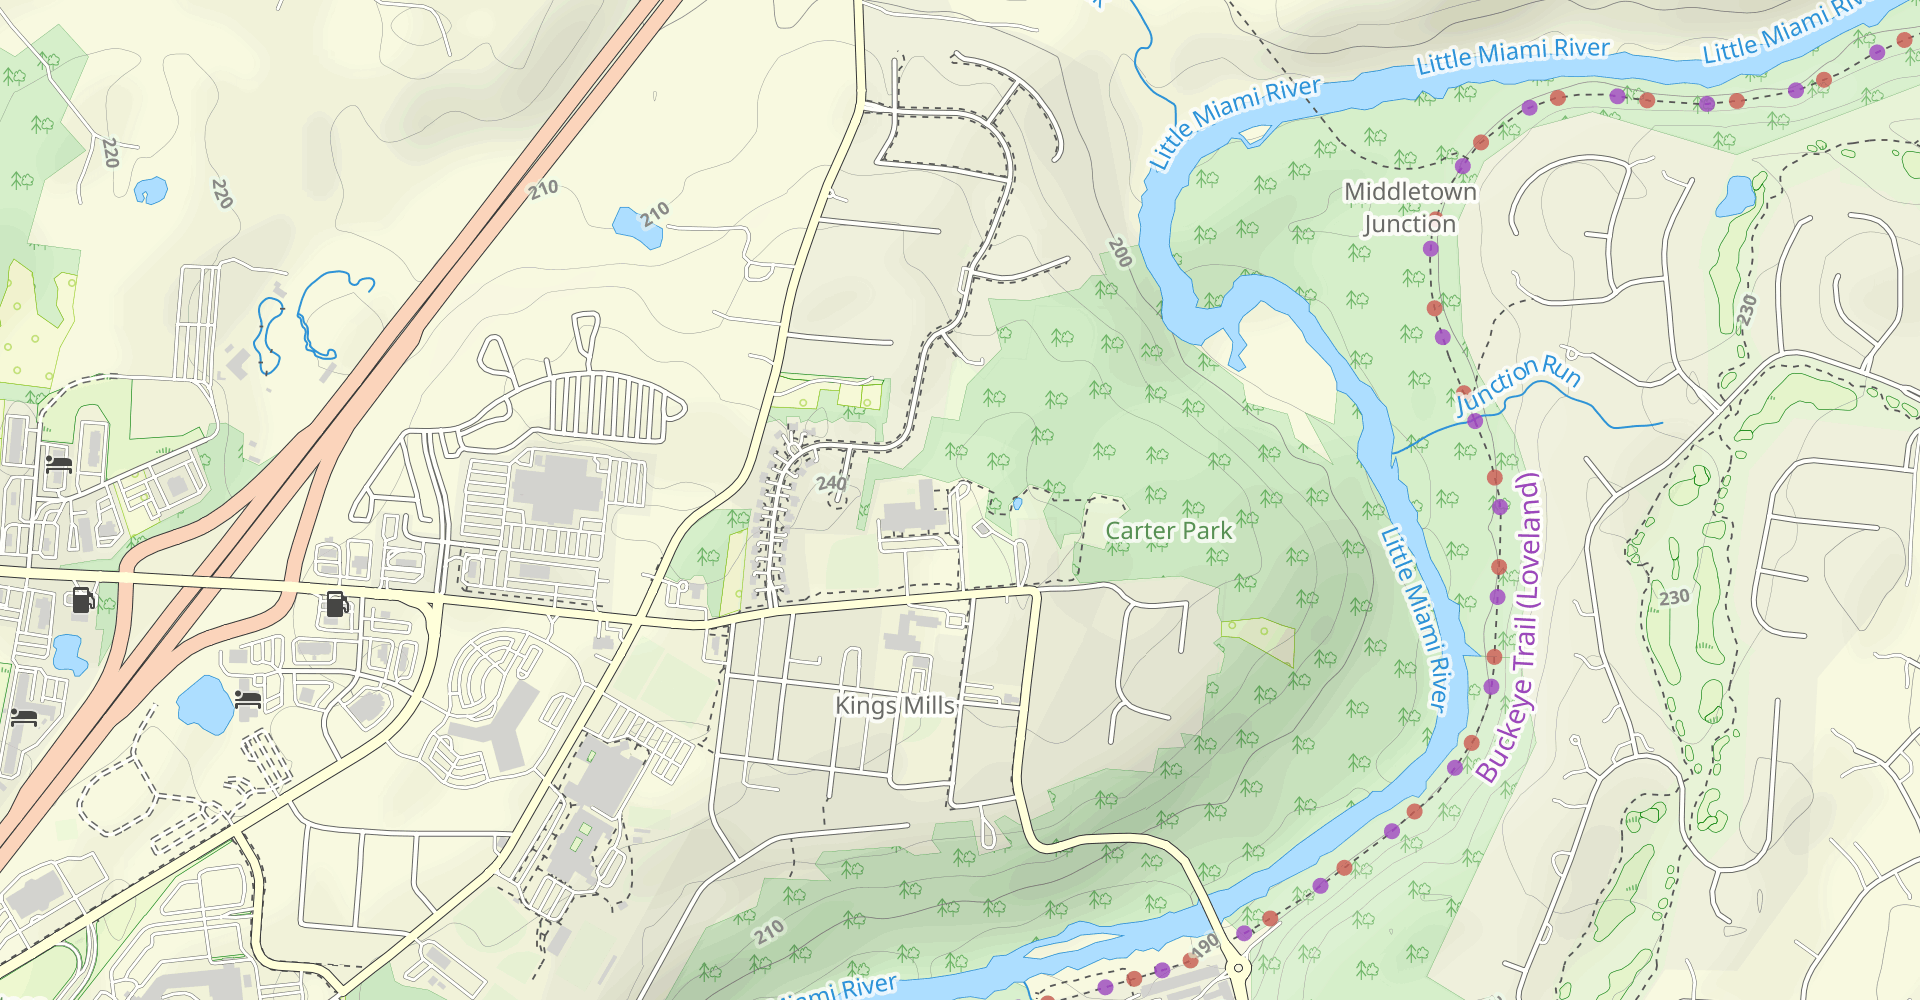 Carter Park Loop